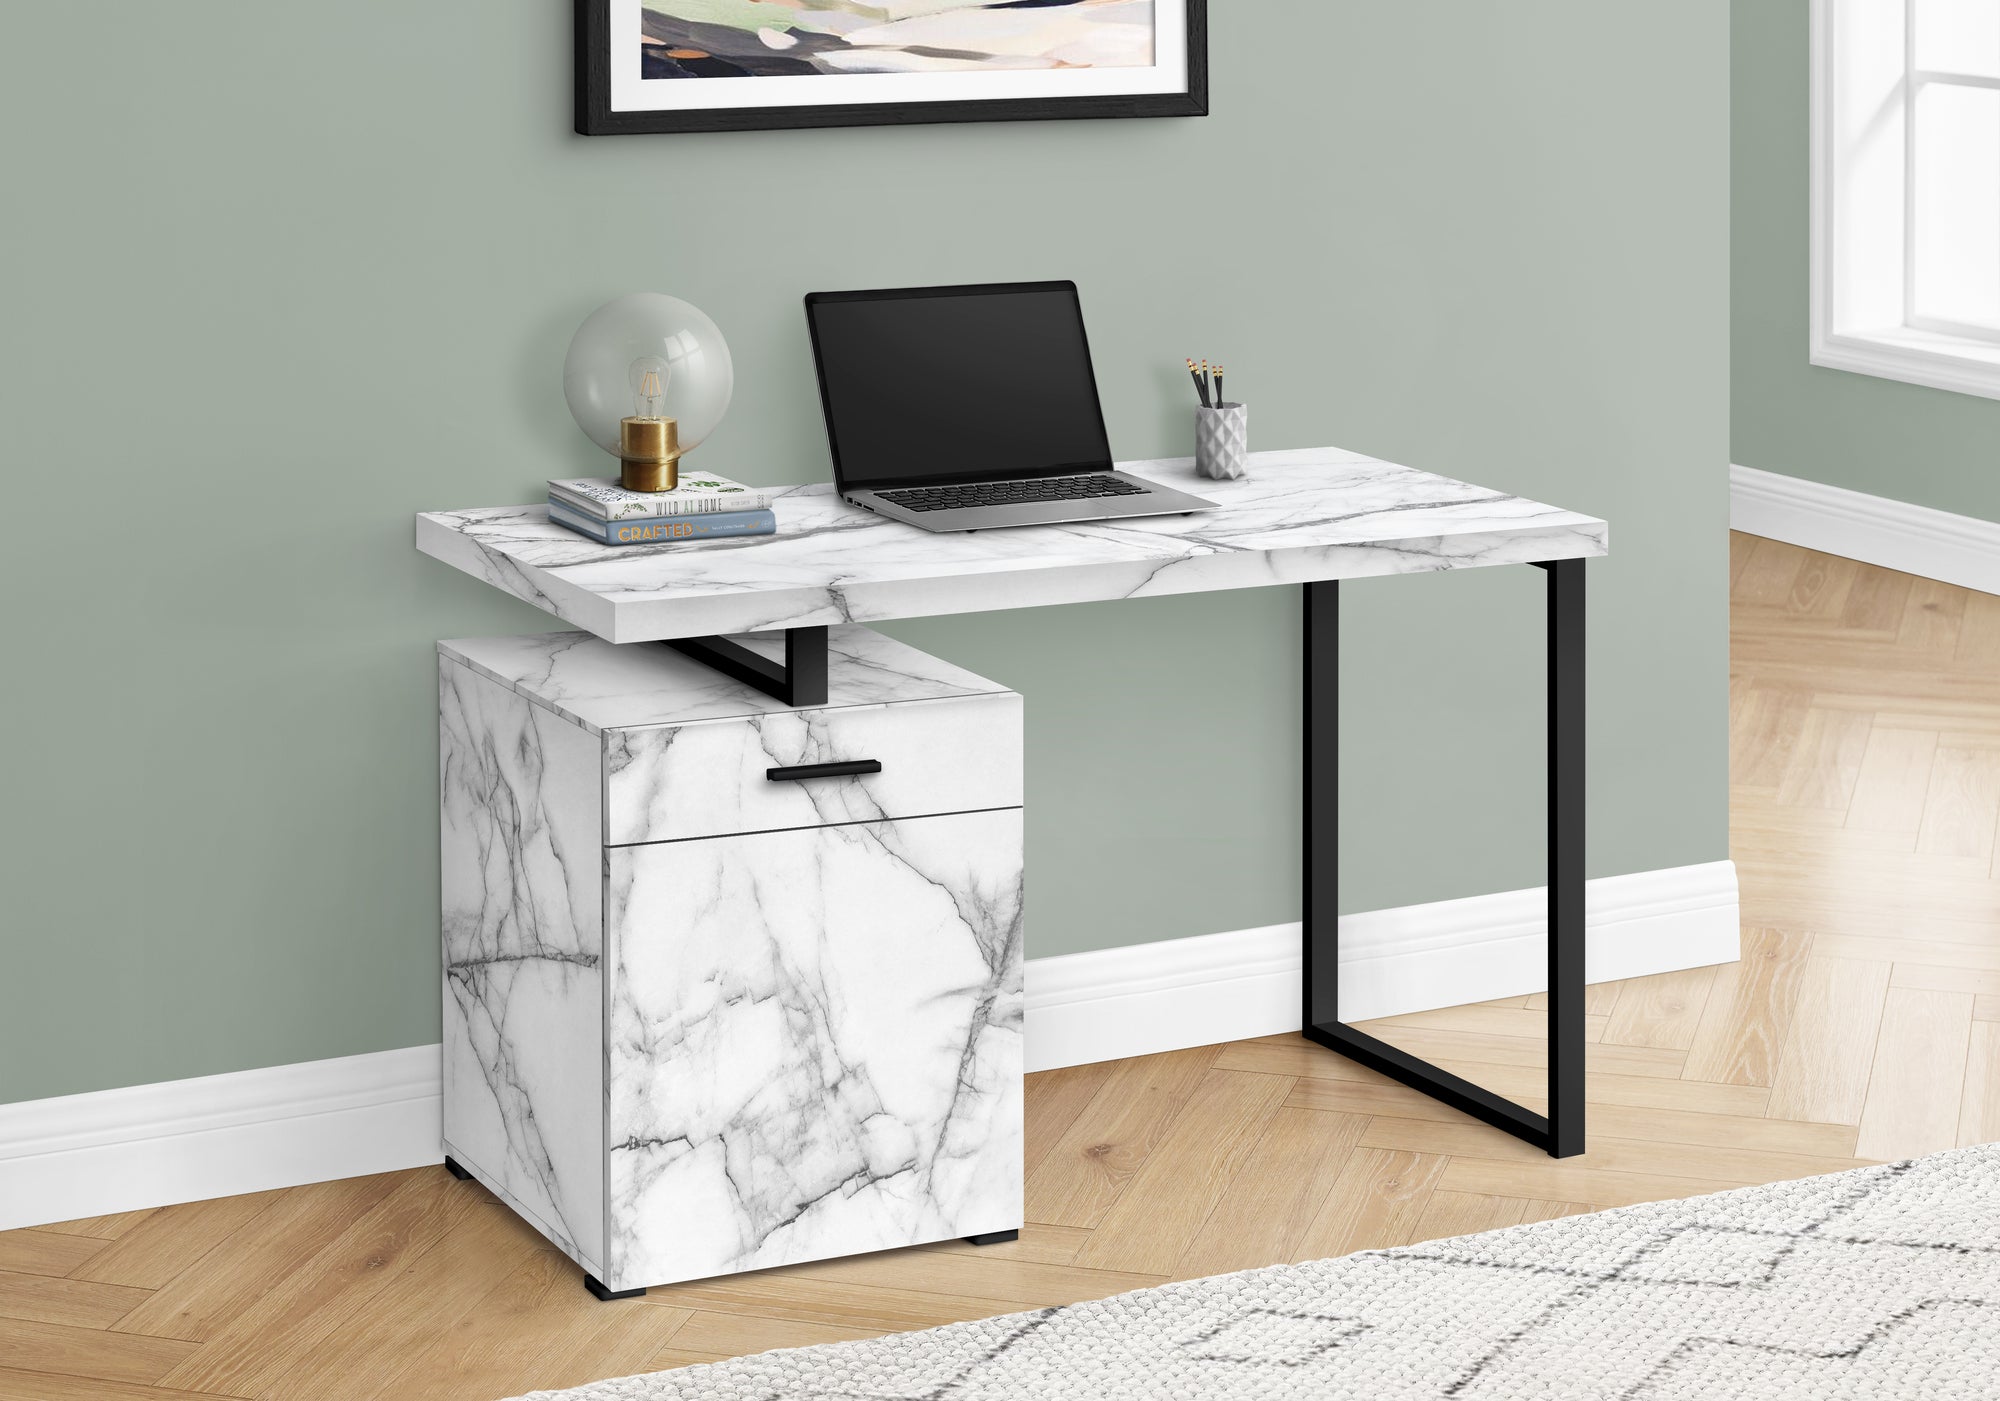 MN-167762    Computer Desk - Storage Drawer / Cabinet / Left Or Right Setup / Floating Desktop - 48"L - White Marble-Look  / Black